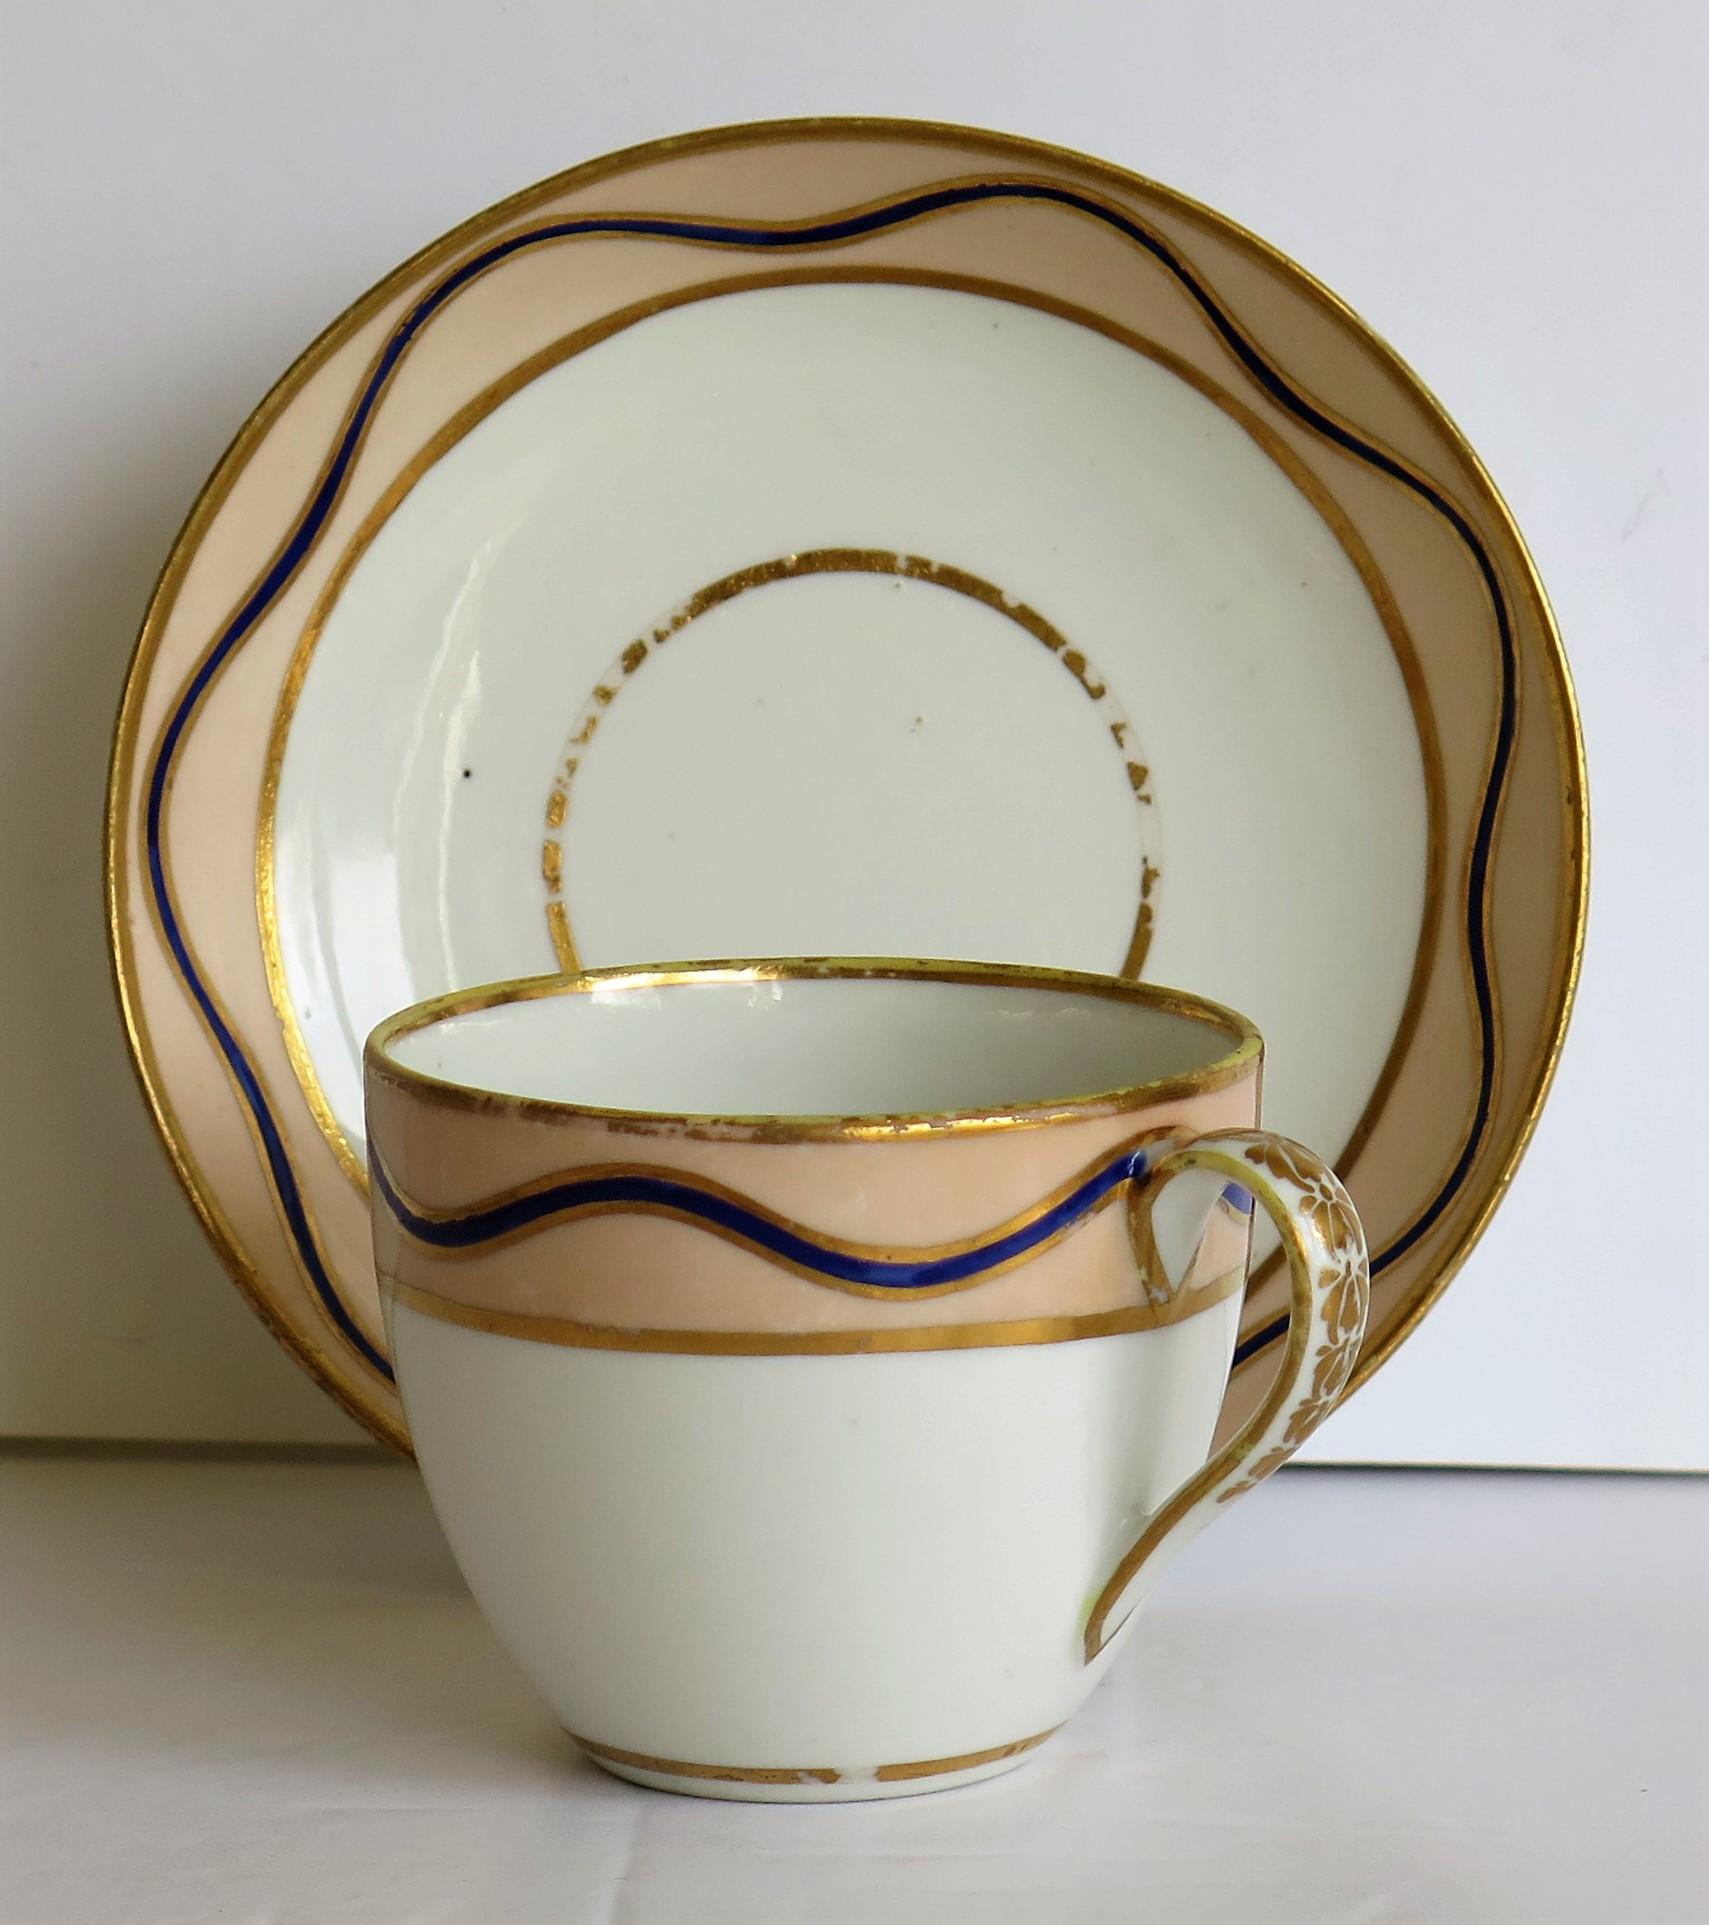 Dies ist ein spätes 18. Jahrhundert Porzellan Teetasse und Untertasse in Muster 128 von der Fabrik Derby, Circa 1795.

Dies ist ein seltenes Derby-Muster, das wir bisher noch nicht gesehen haben.

Die Tasse hat die Bute-Form mit einem langen